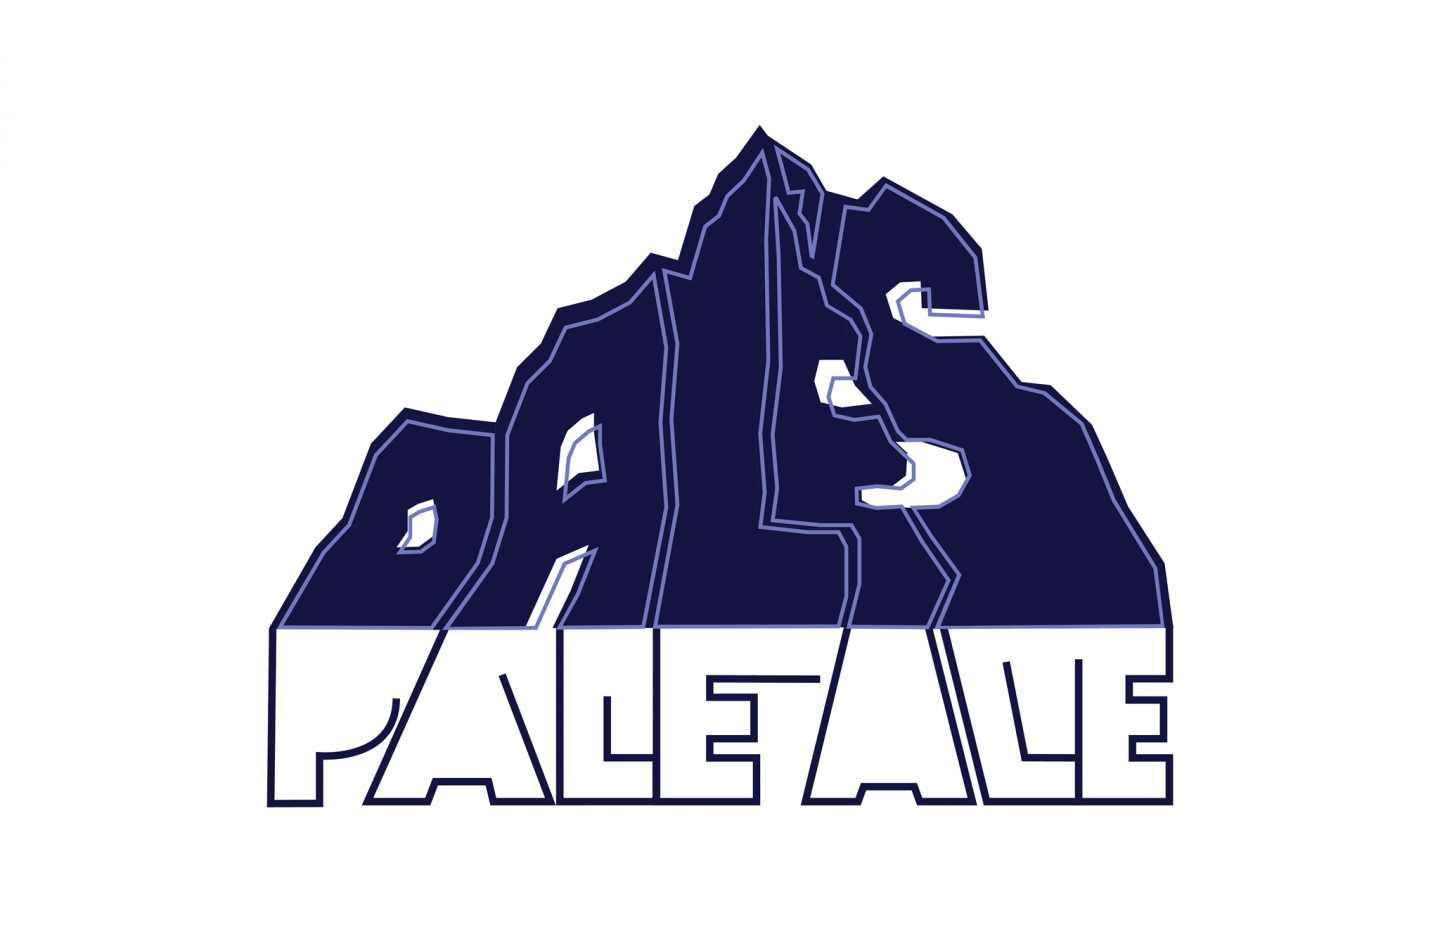 Dale's Pale Ale 